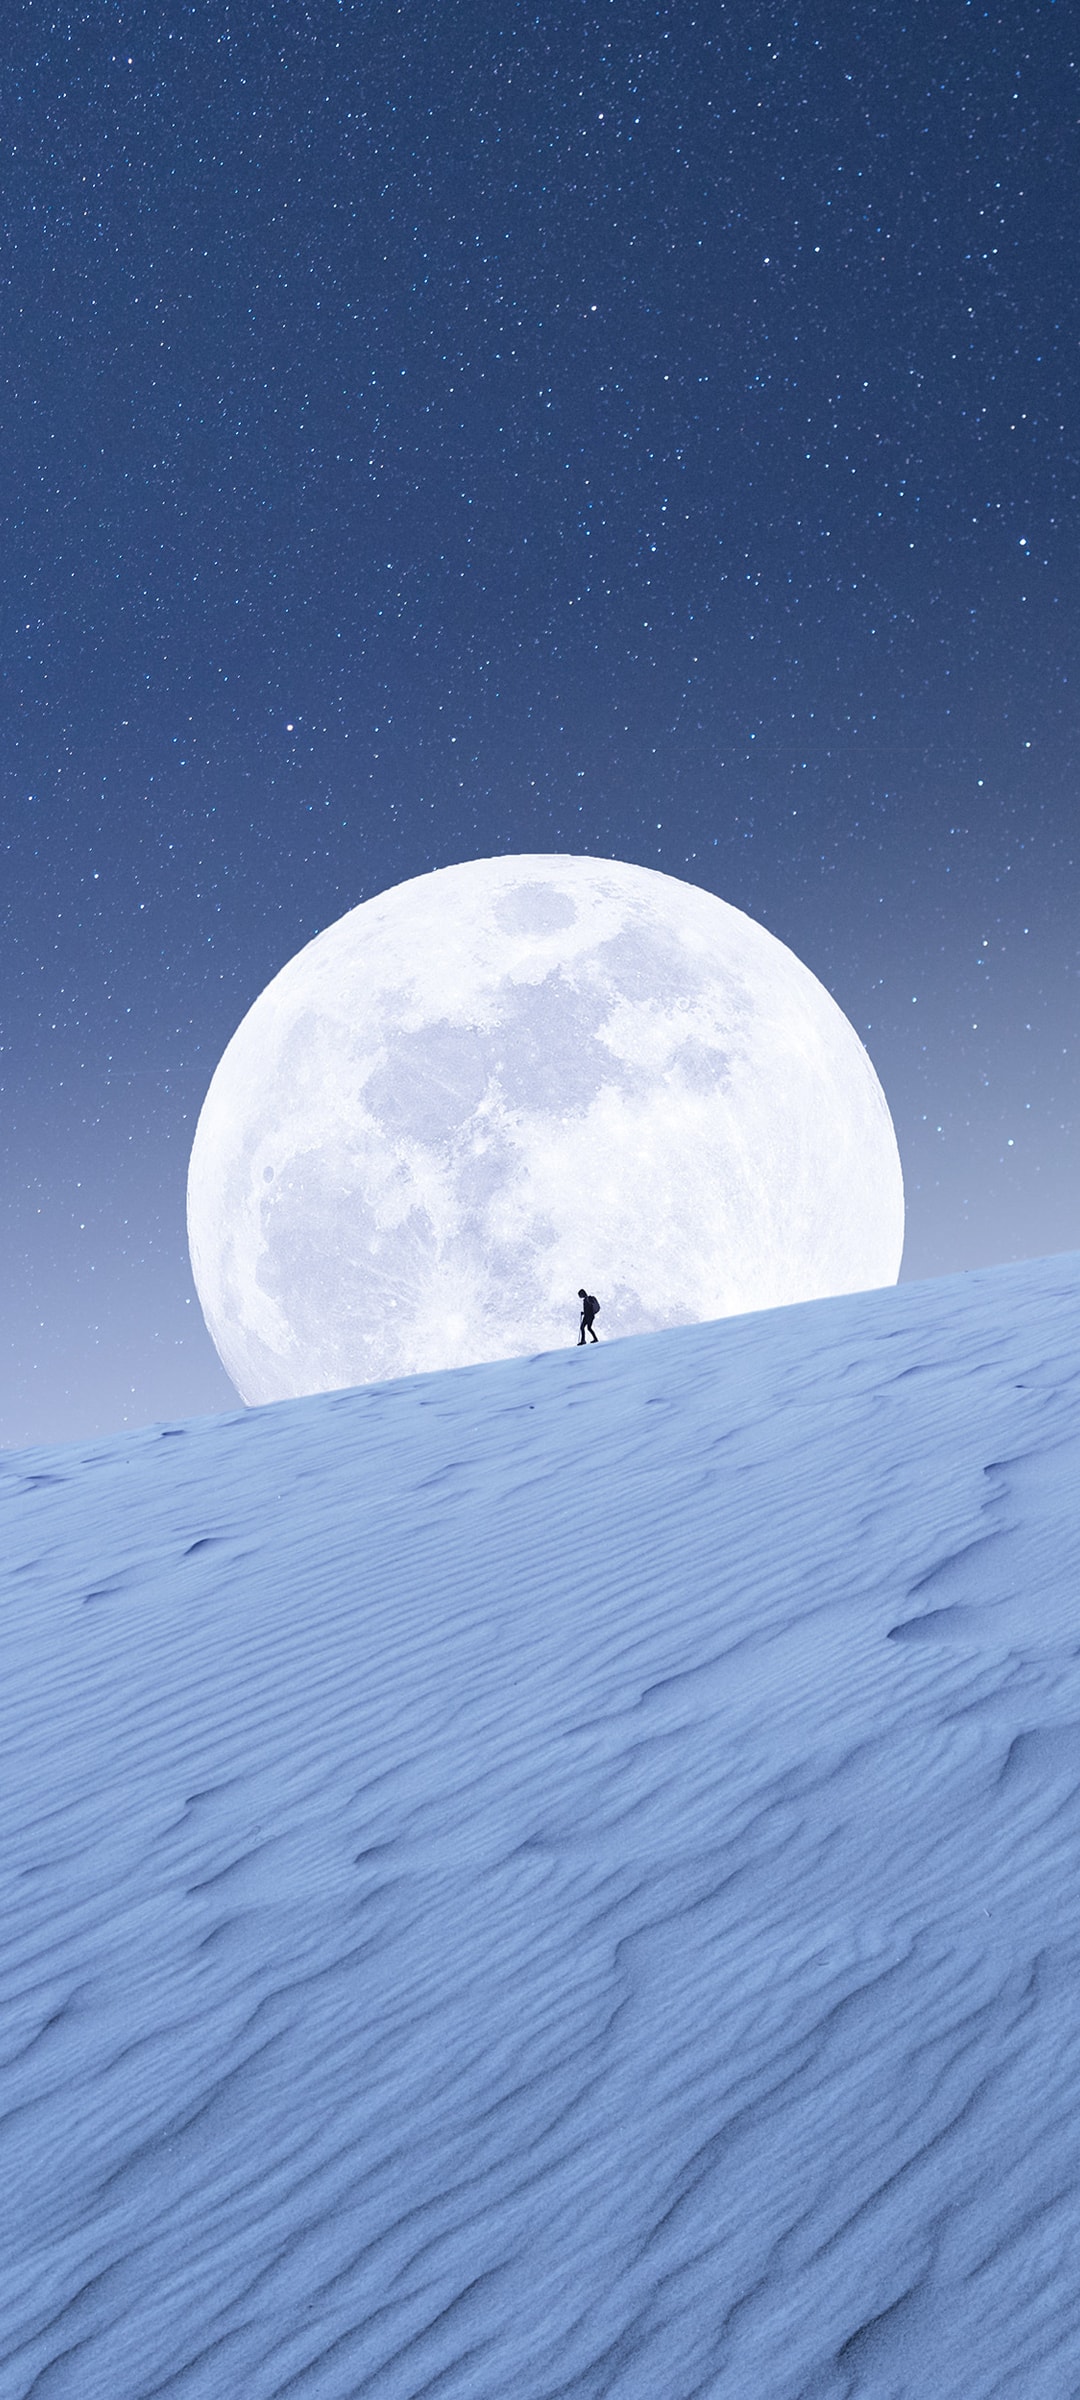 圆月之夜孤独的赶路人一路前行唯美风景